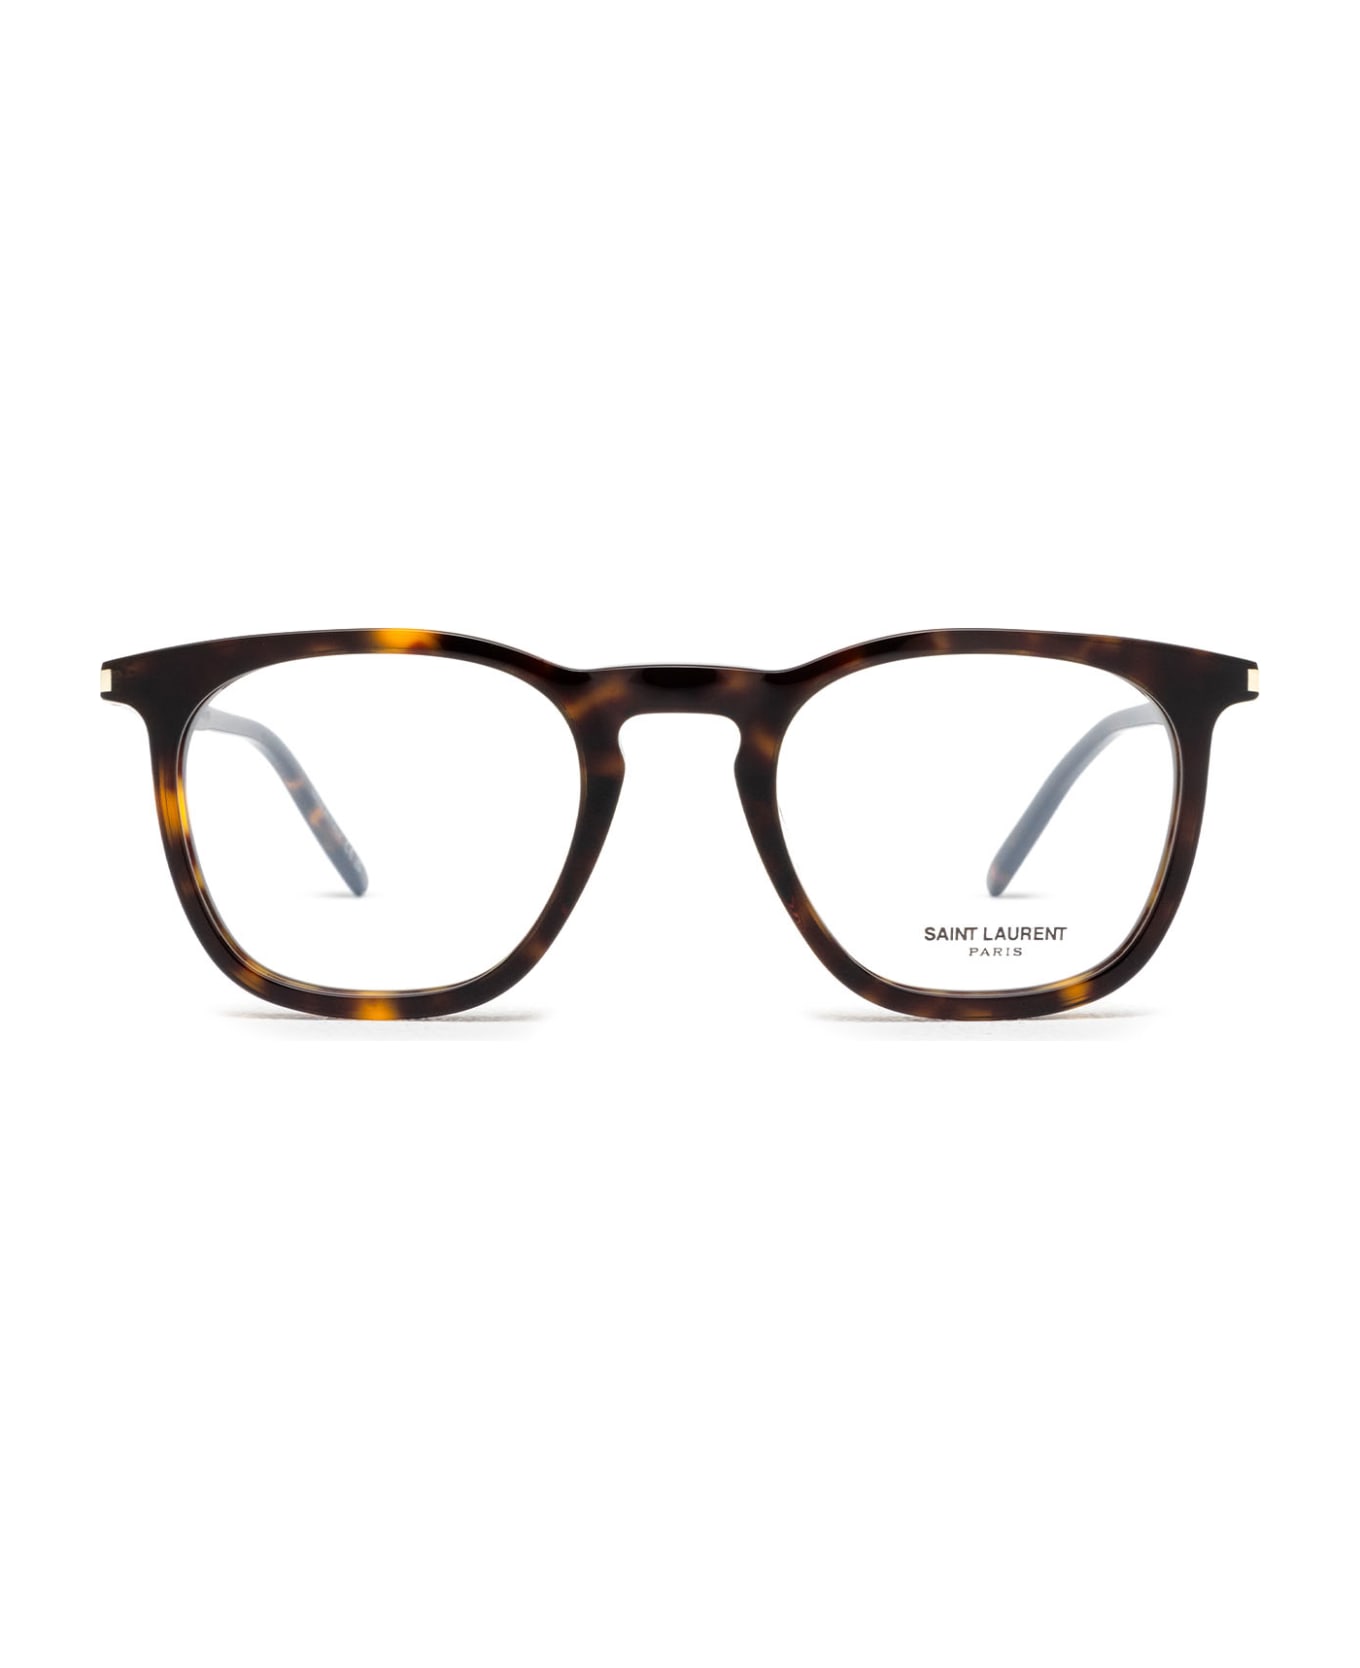 Saint Laurent Eyewear Sl 623 Opt Havana Glasses - Havana アイウェア